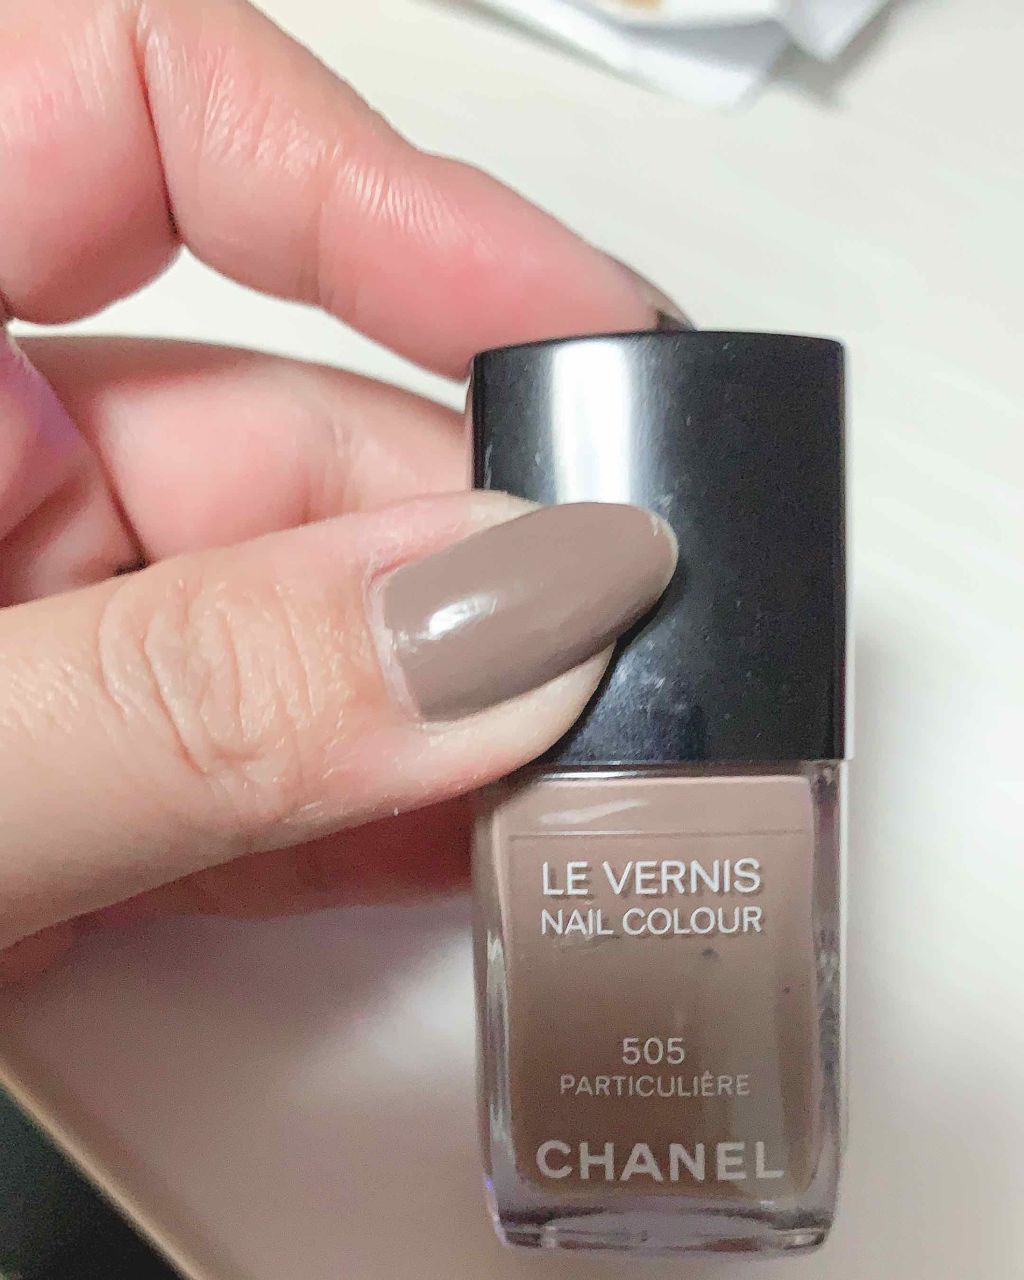 CHANEL Chanel Le Vernis Longwear Nail Colour - 505 Particuliere - Reviews